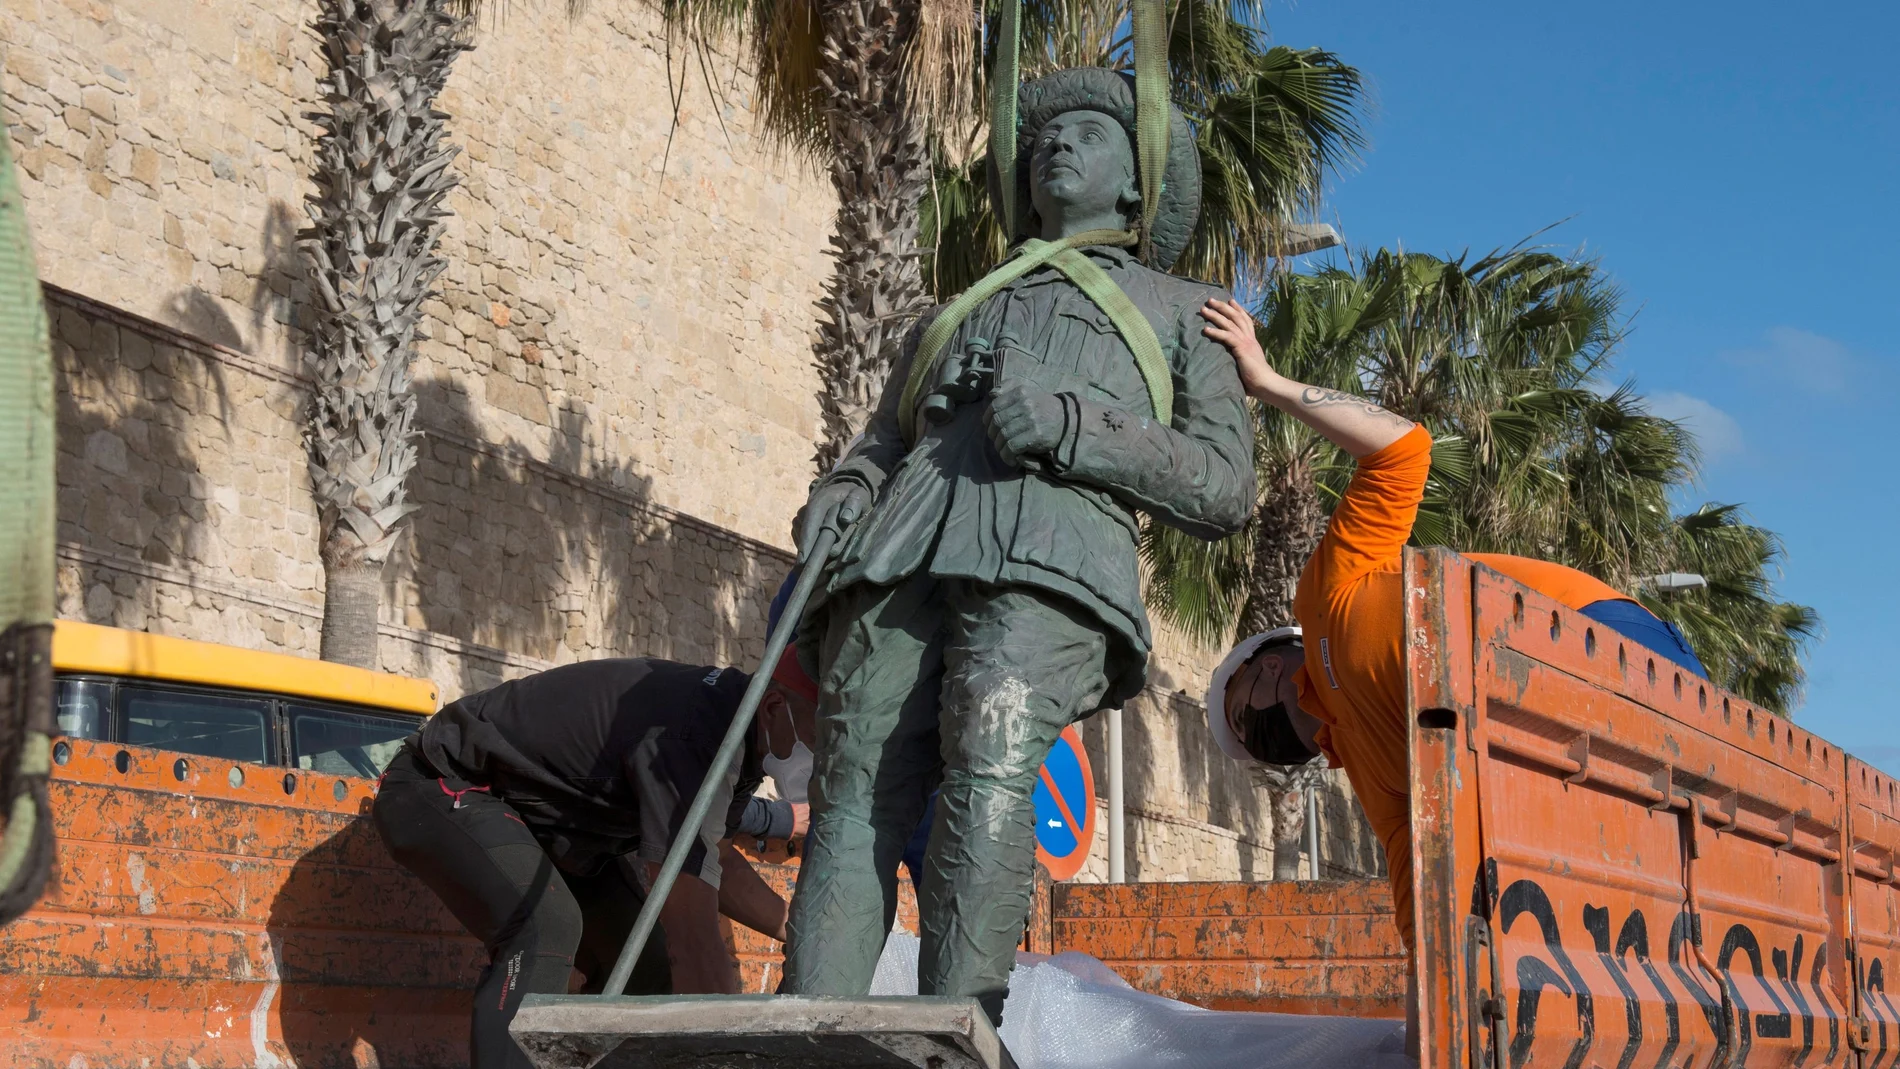 Operarios retiran la estatua que recordaba a Franco como comandante de la Legión, el pasado 23 de febrero en Melilla